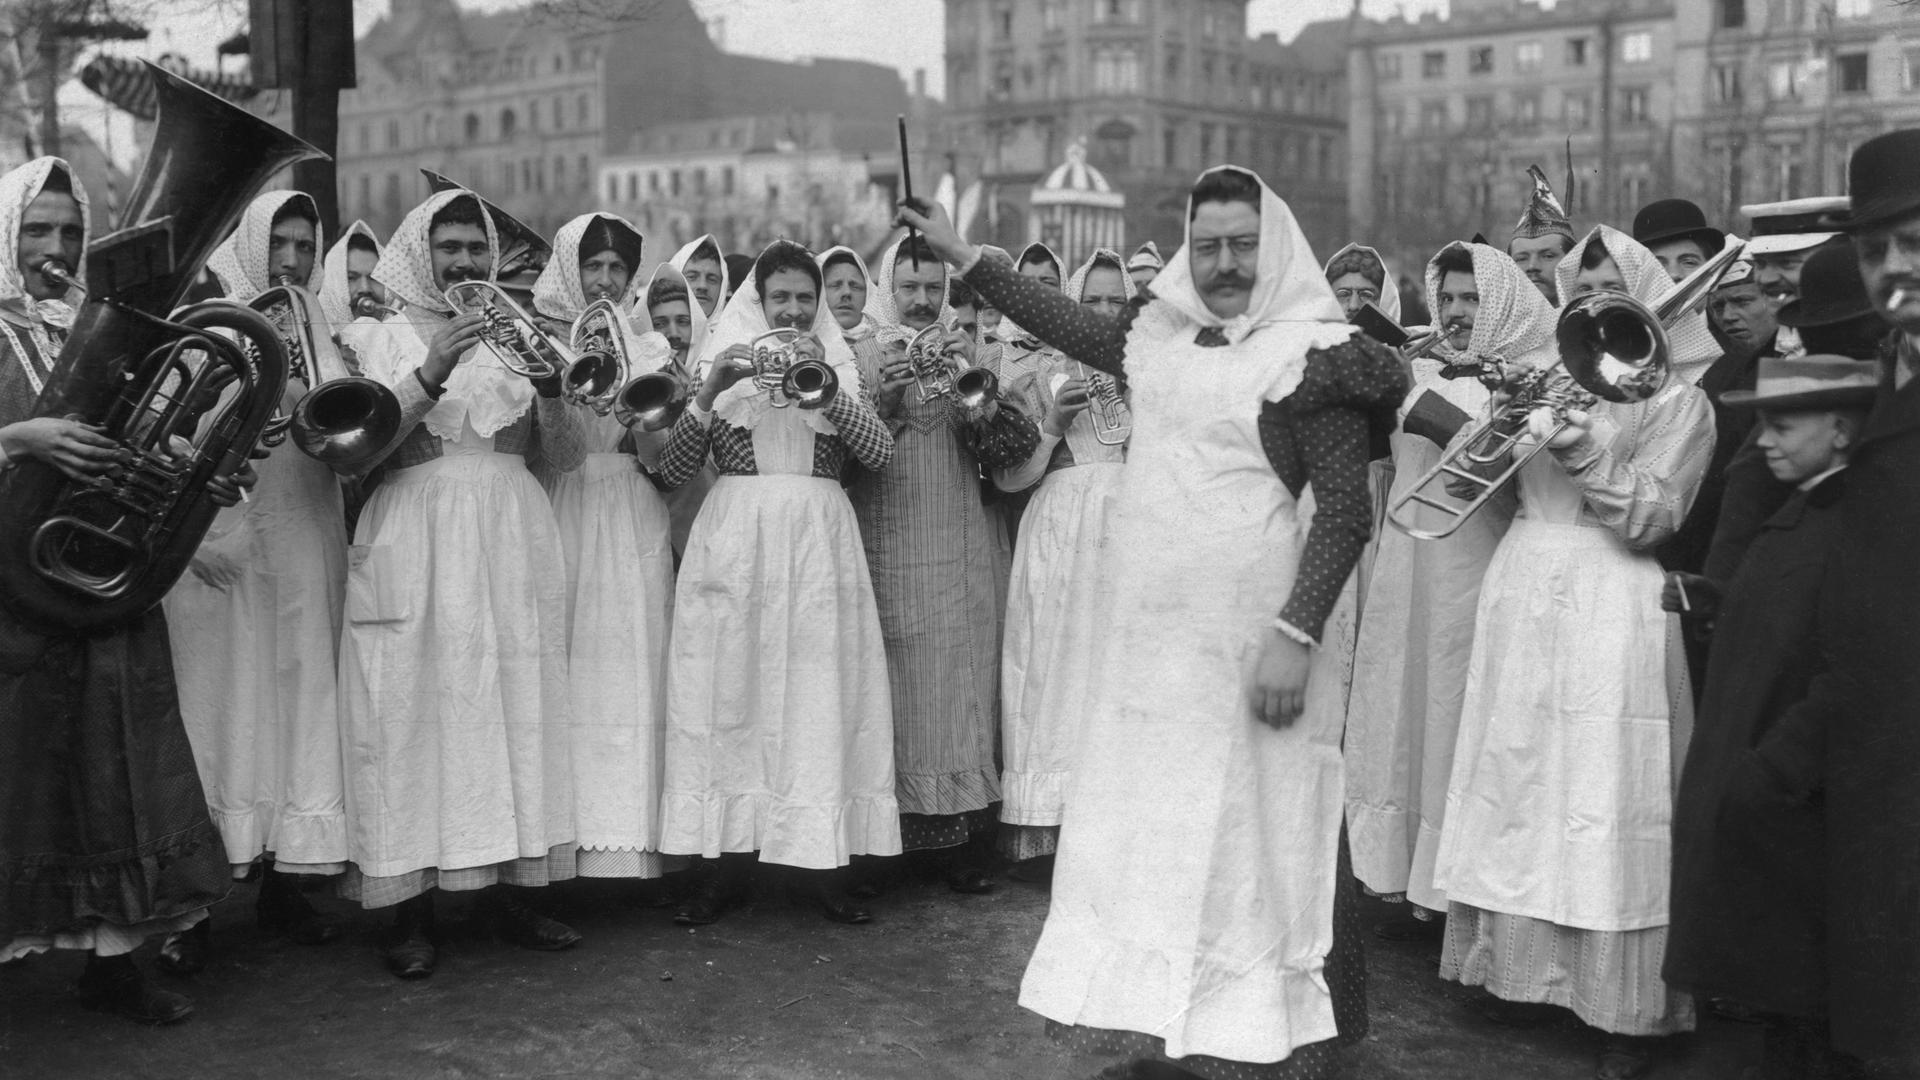 Das Orchester der "Kölner Milchmädchen" tritt in Verkleidung beim Kölner Strassenkarneval auf, ca. 1910. Eine Männerguppe in Frauenkleidung mit Kopftüchern spielt mit Blasinstrumenten einen Tusch.